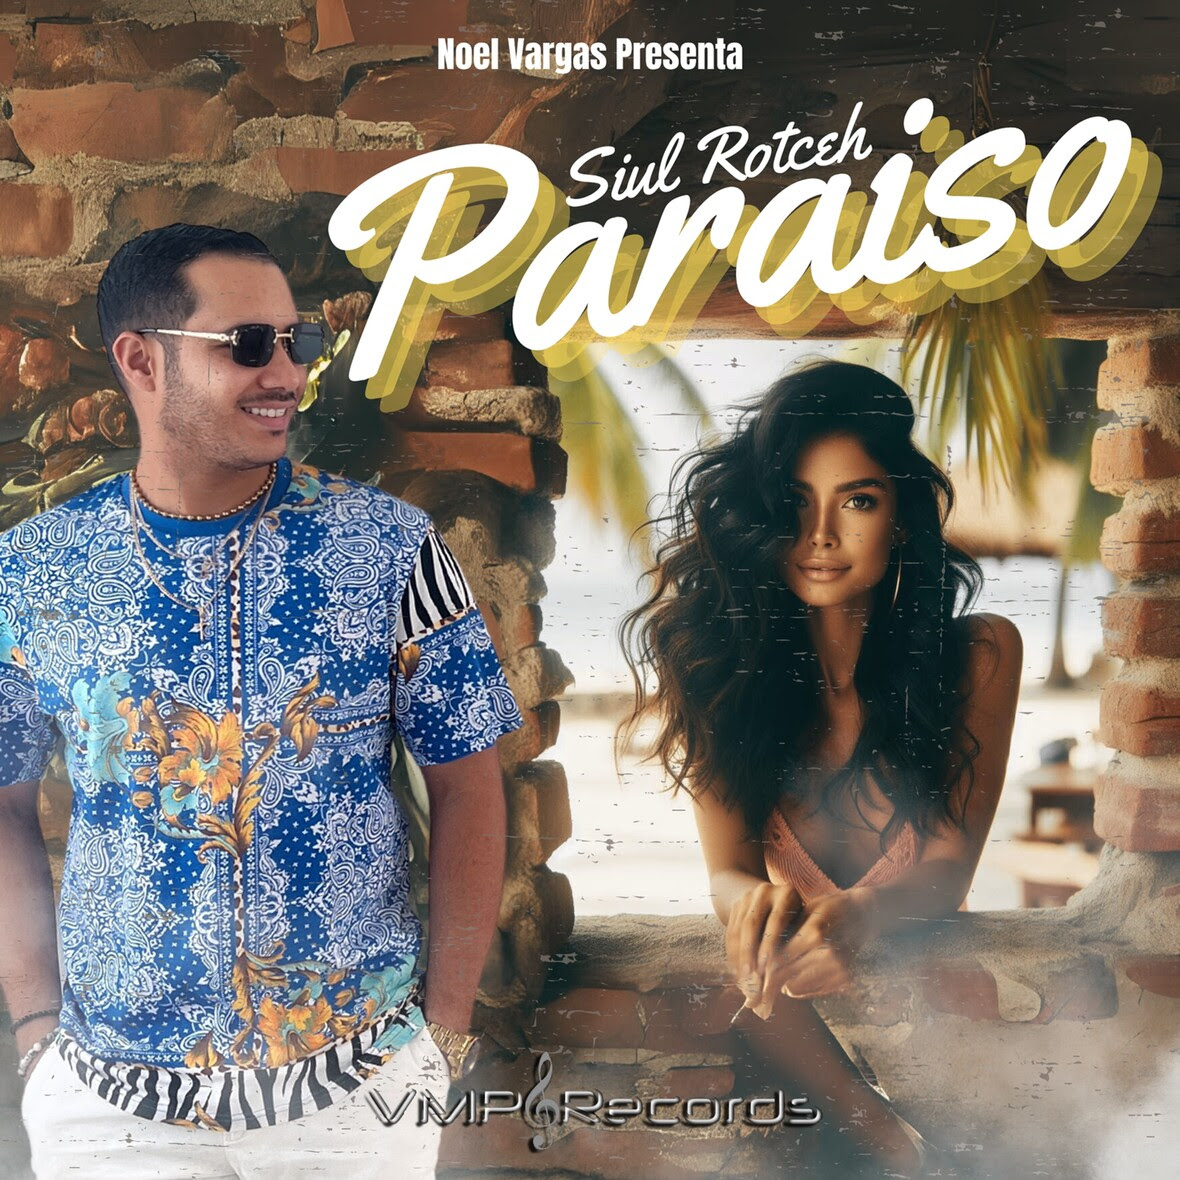 Noel Vargas lanza su nuevo tema Paraíso junto al cantante Boricua Siul Rotceh